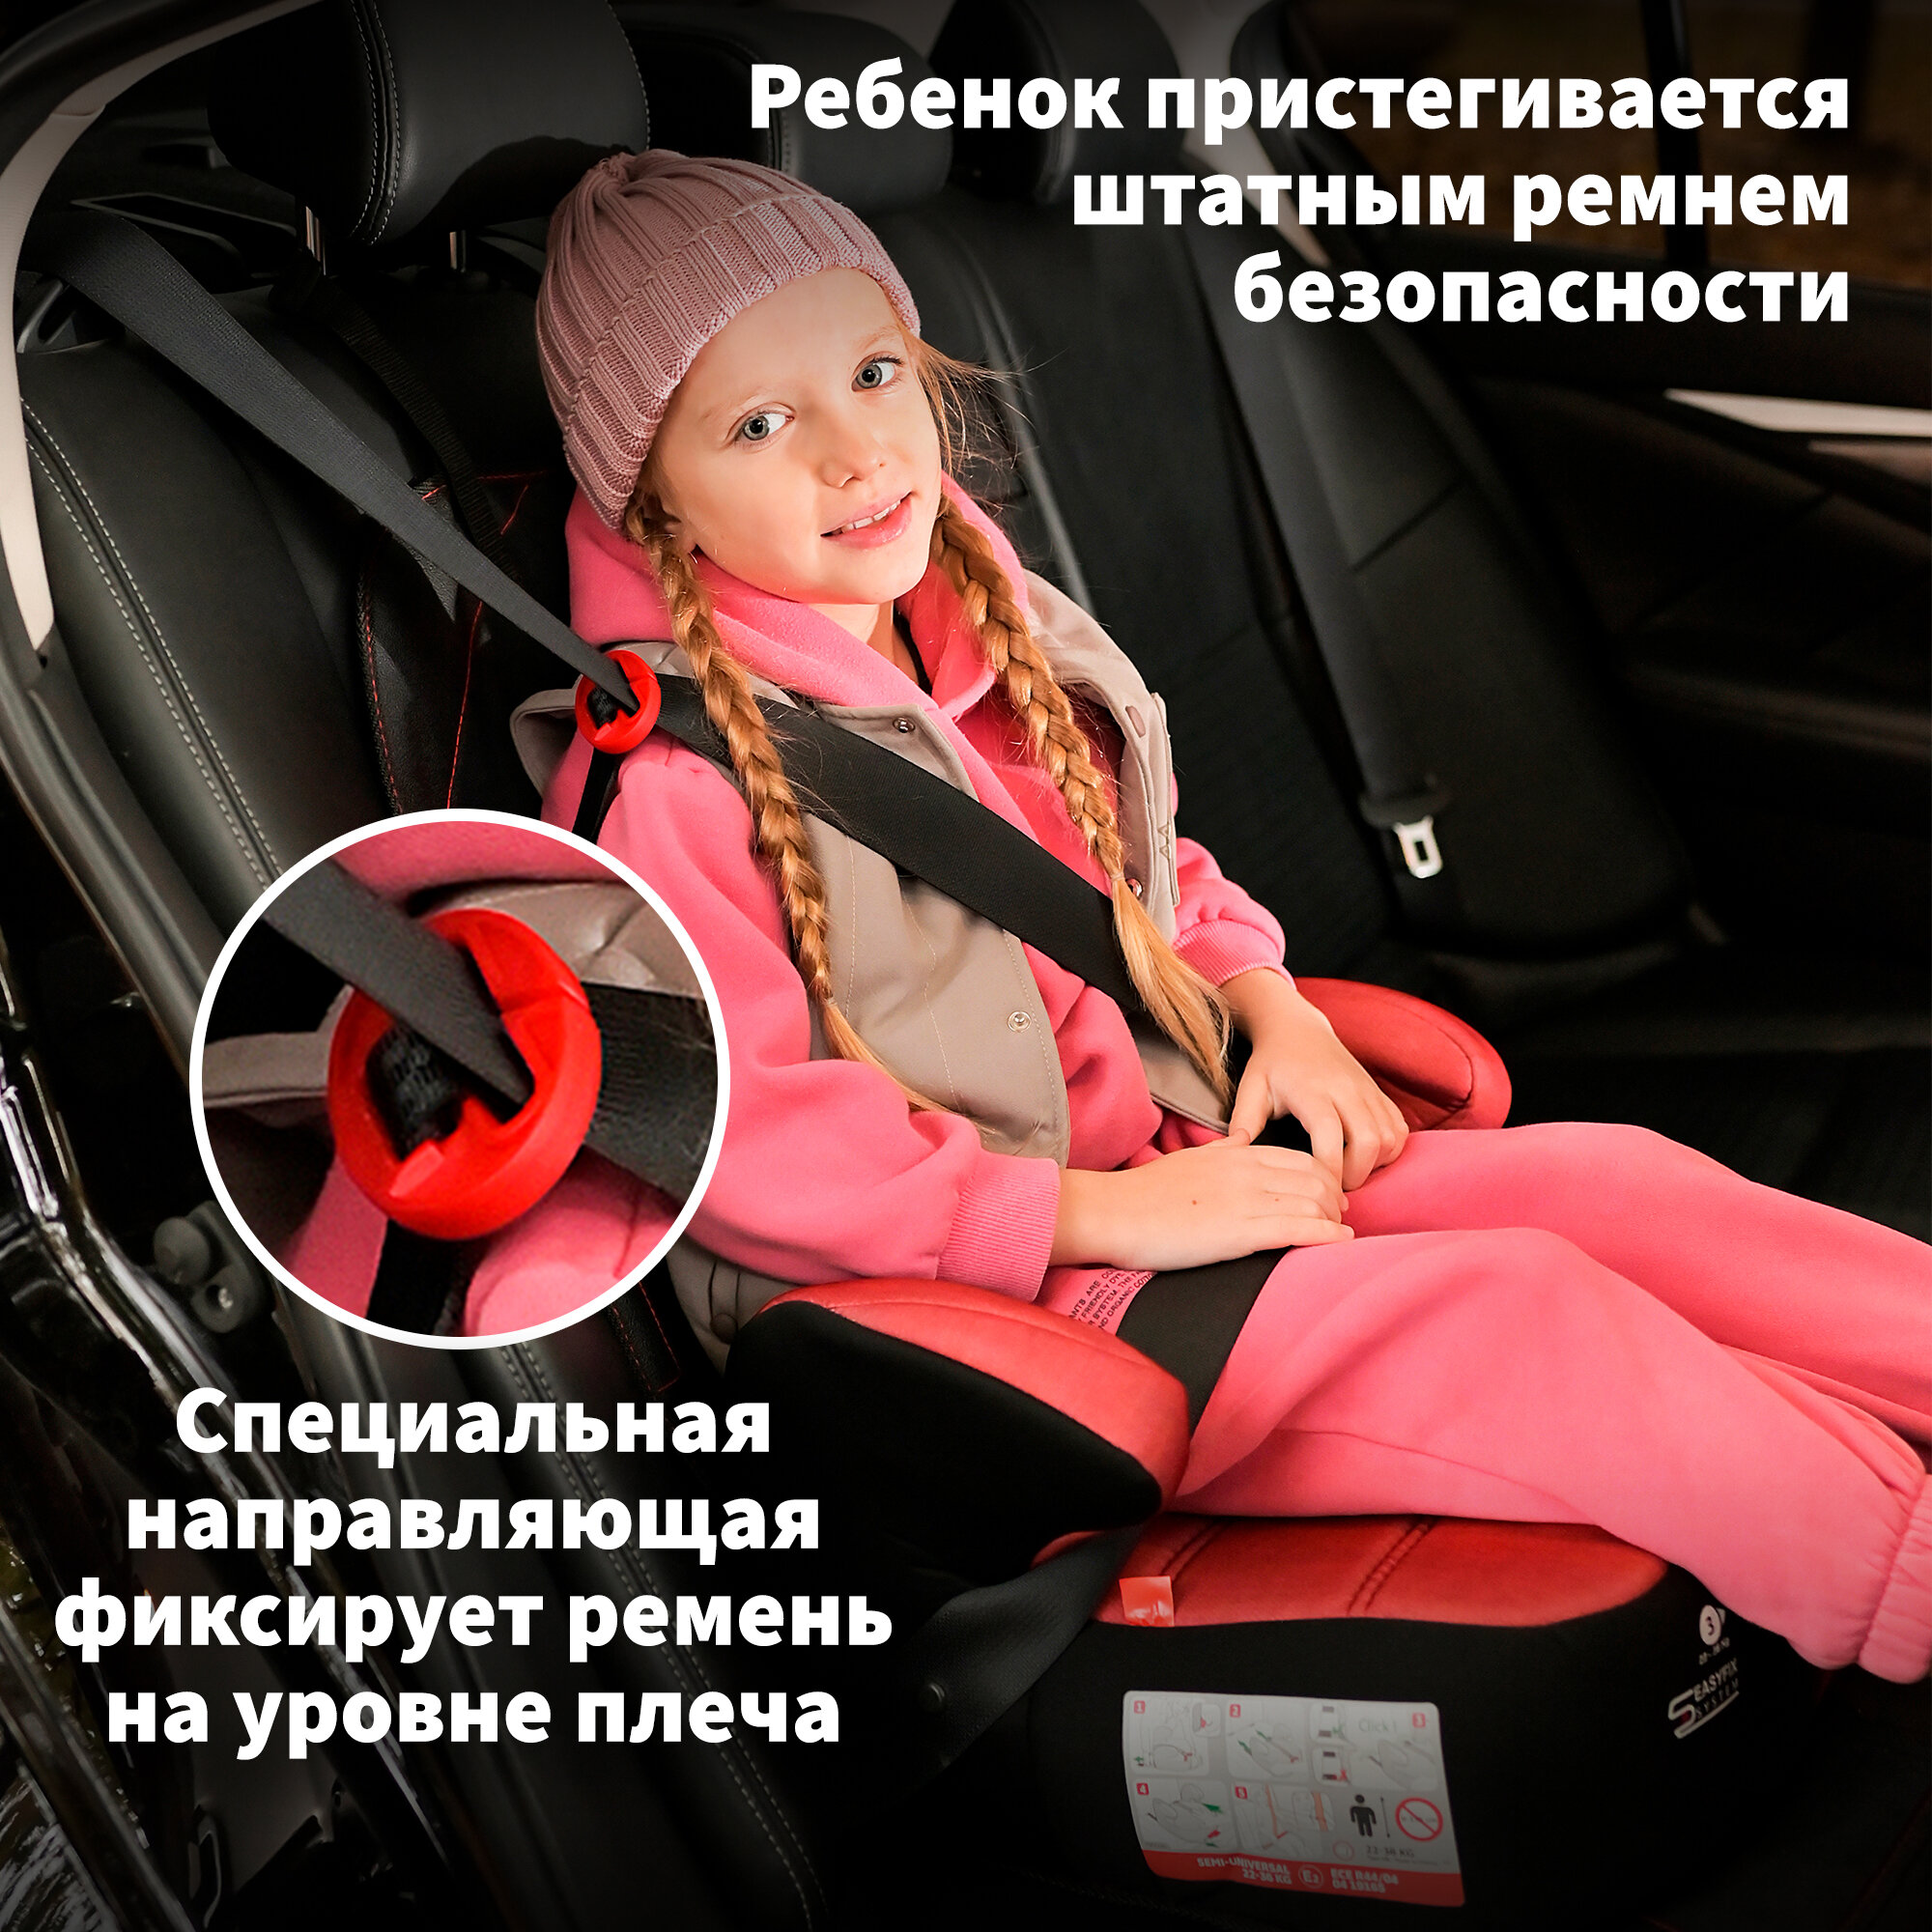 Детское автокресло - бустер автомобильный NANIA DREAM EASYFIX Racing Luxe Red от 6 до 12 лет 15-36 кг